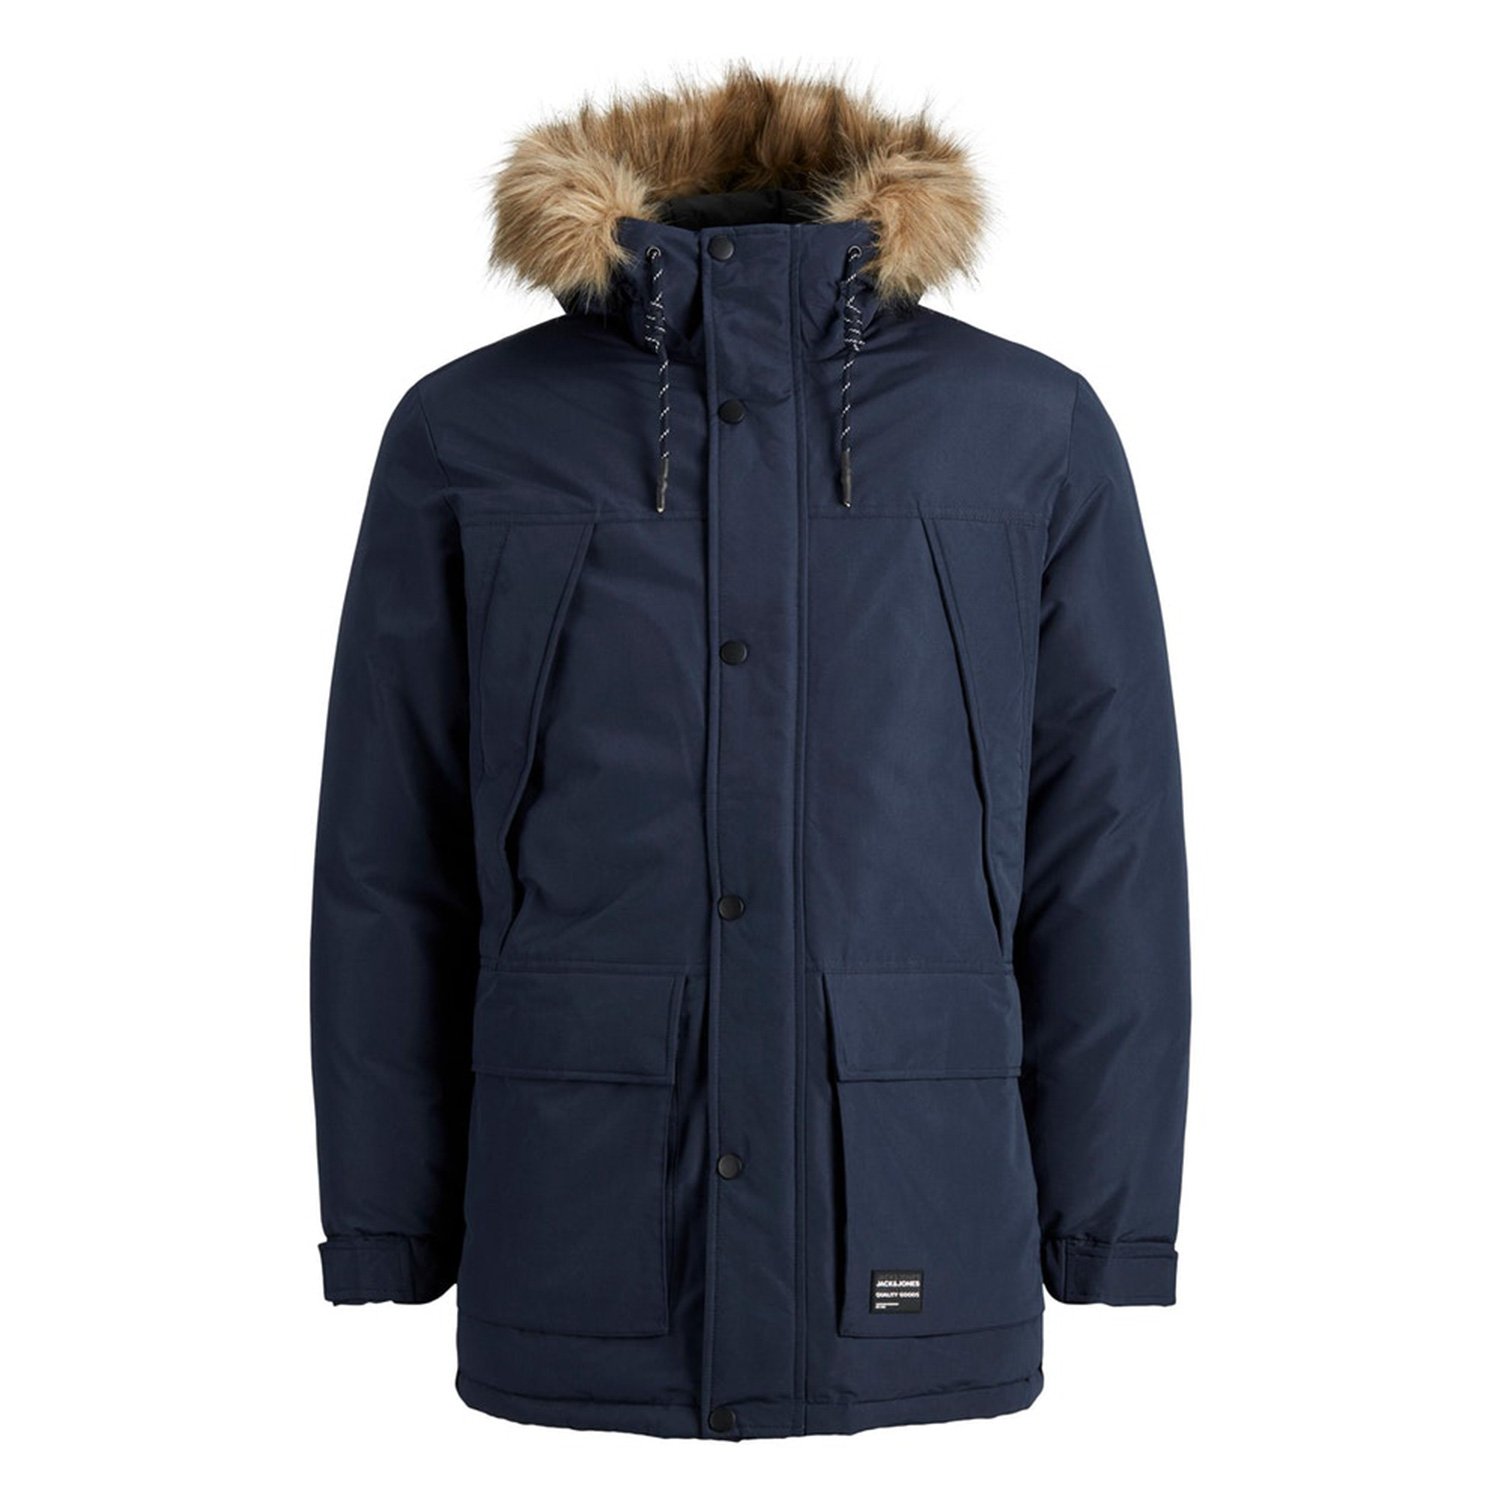 JACK & JONES Faux Fur Parka Jacket Teddy Fur Lined Warm Hooded Winter Coat Blue 